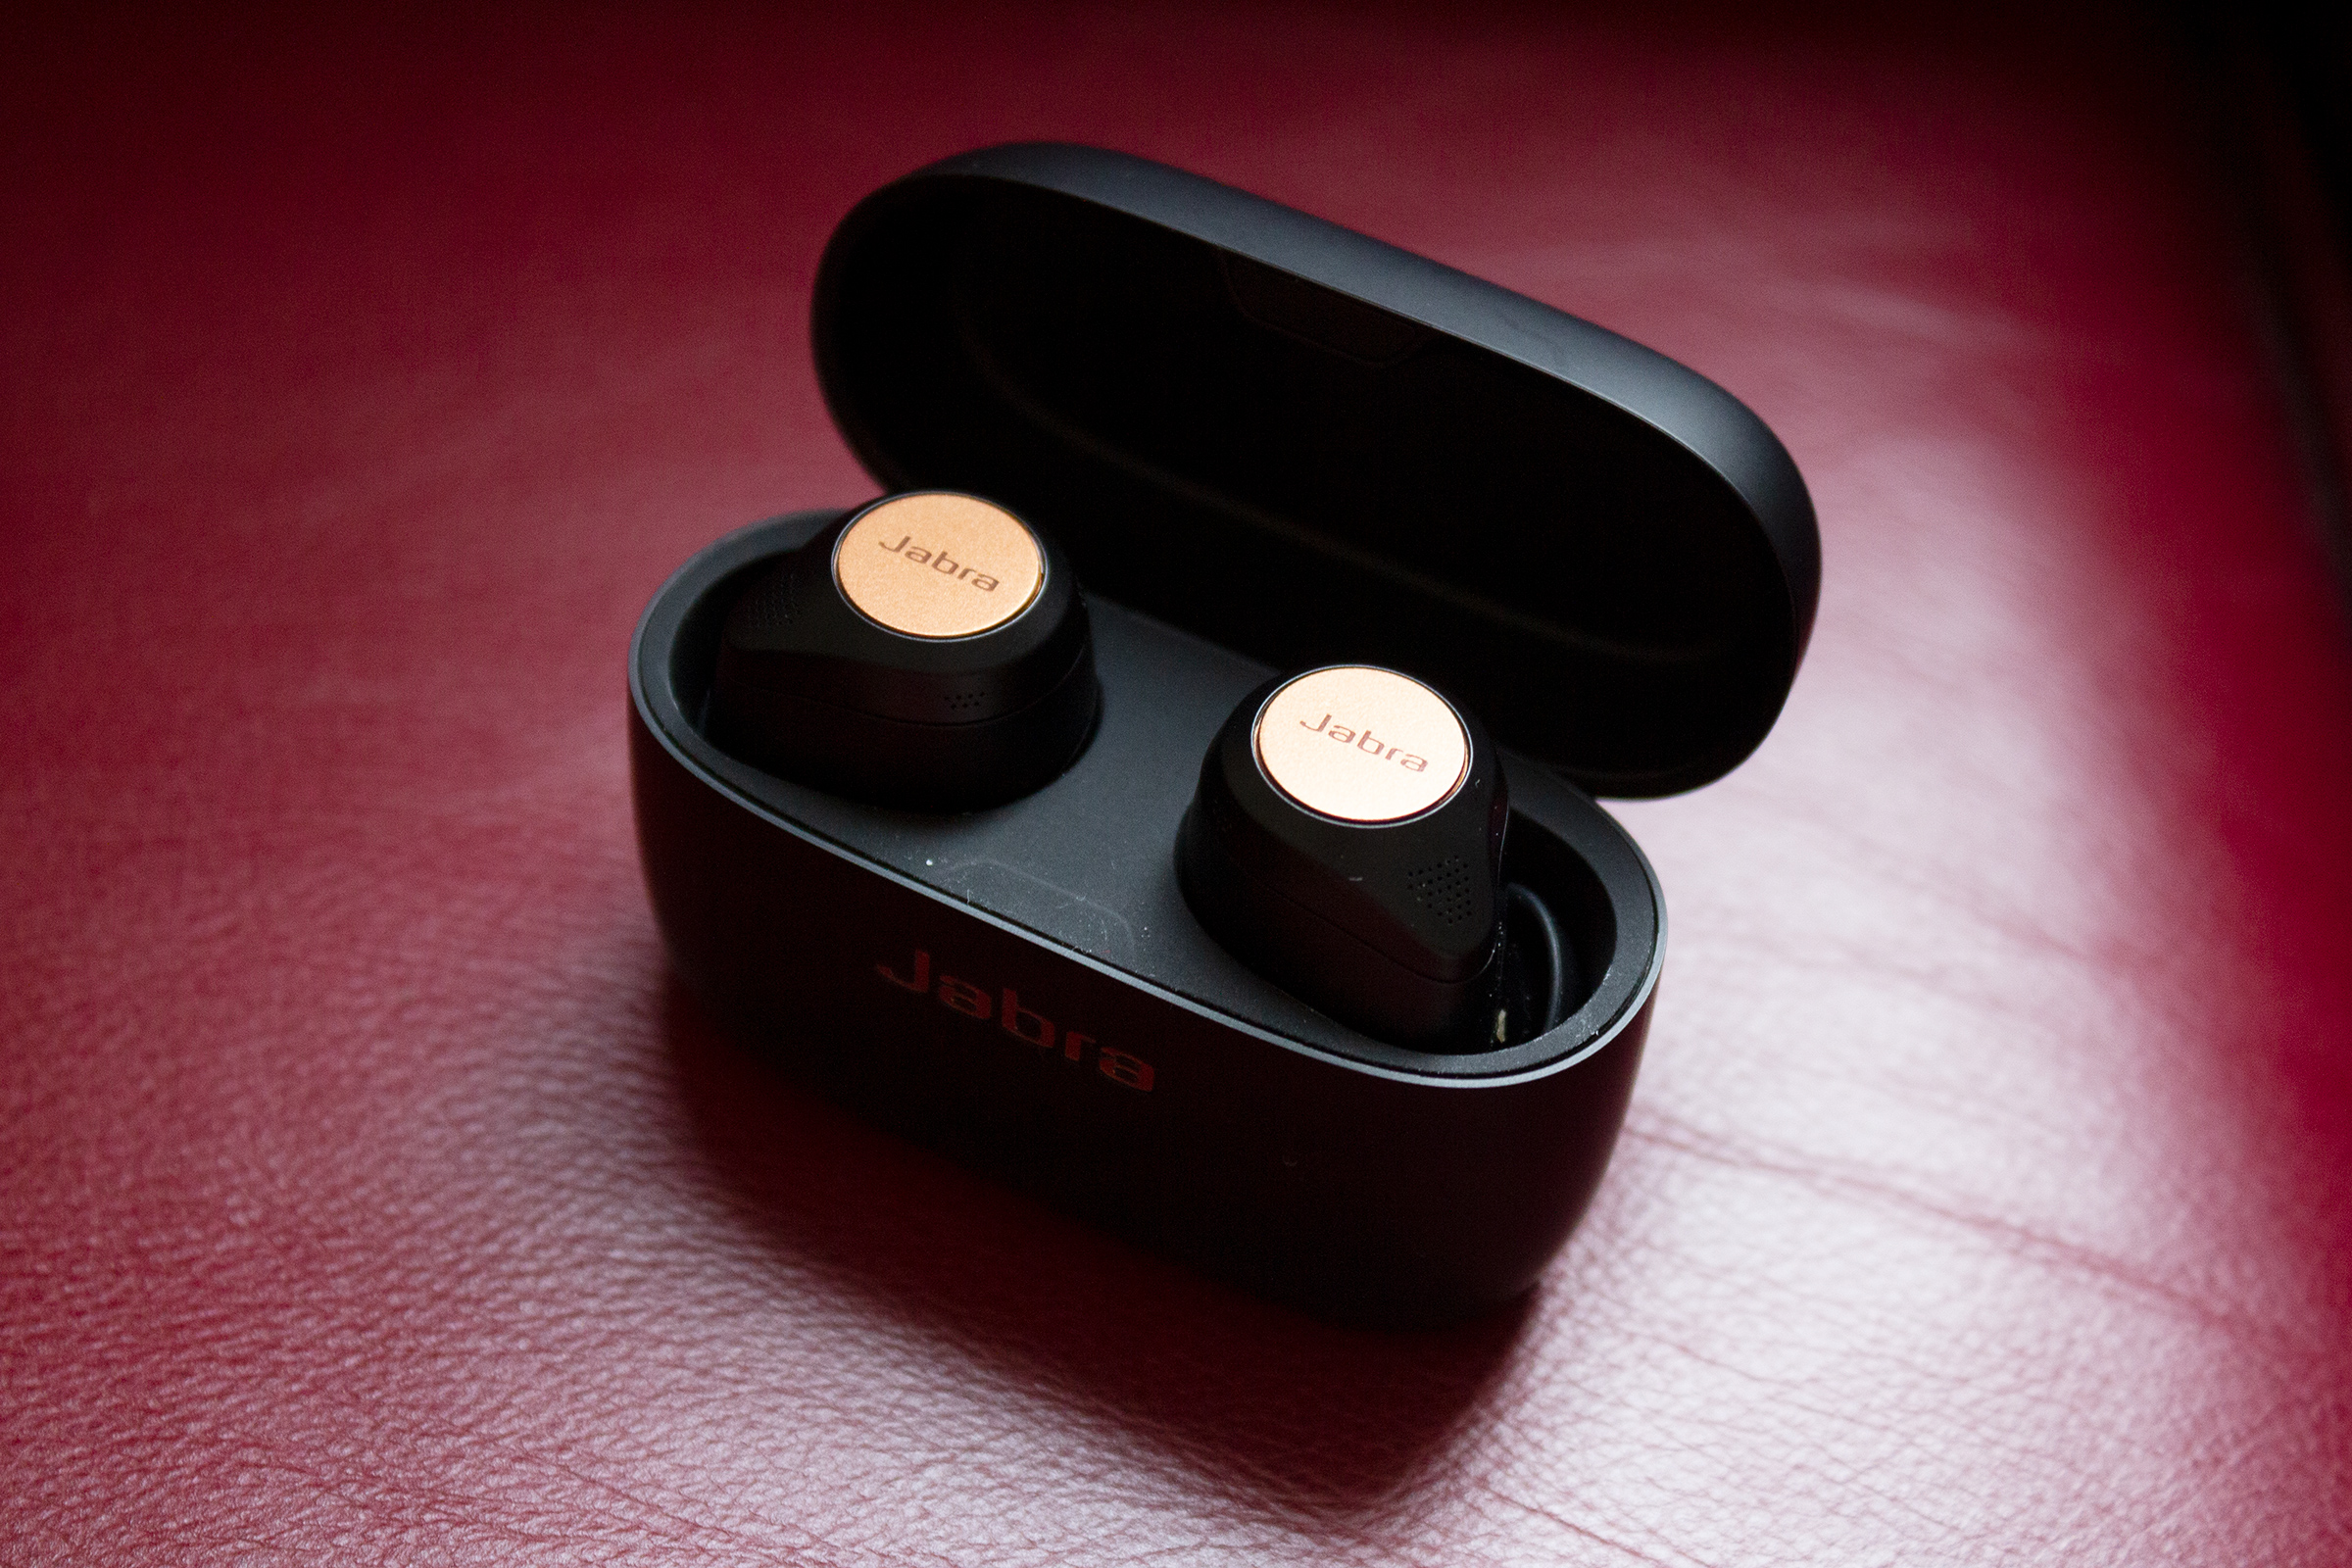 Jabra 85t - Best all-around wireless earbuds